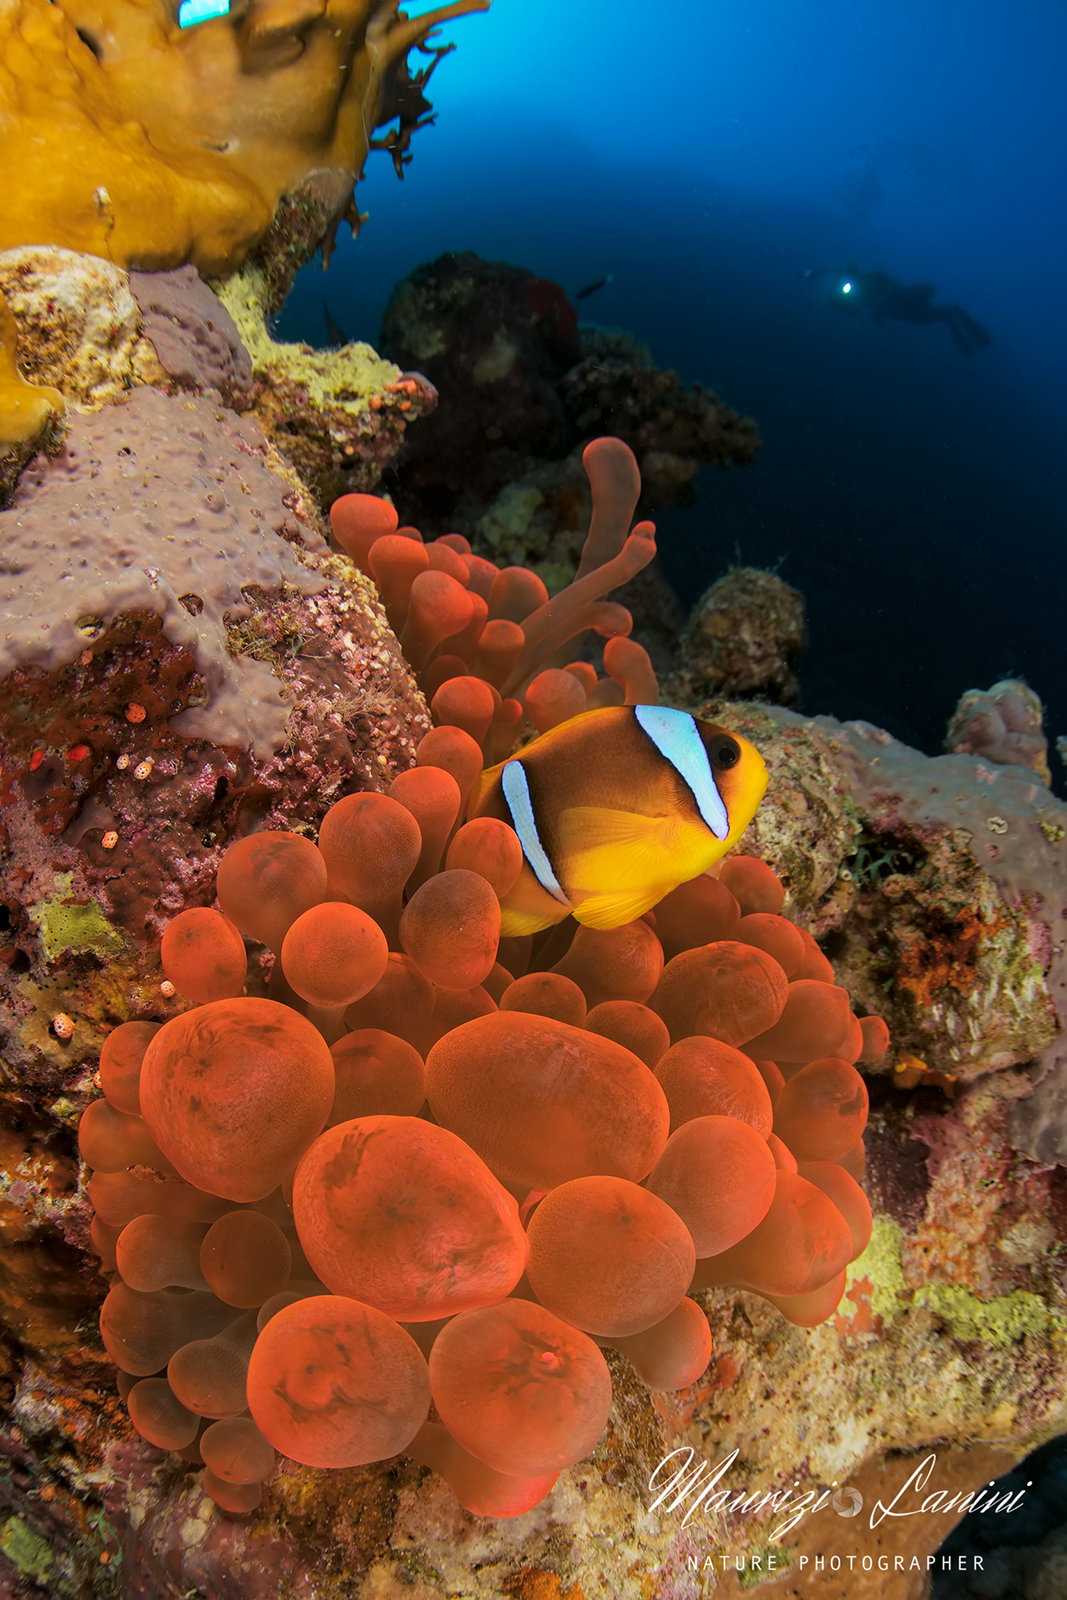 Pesce pagliaccio, Clownfish